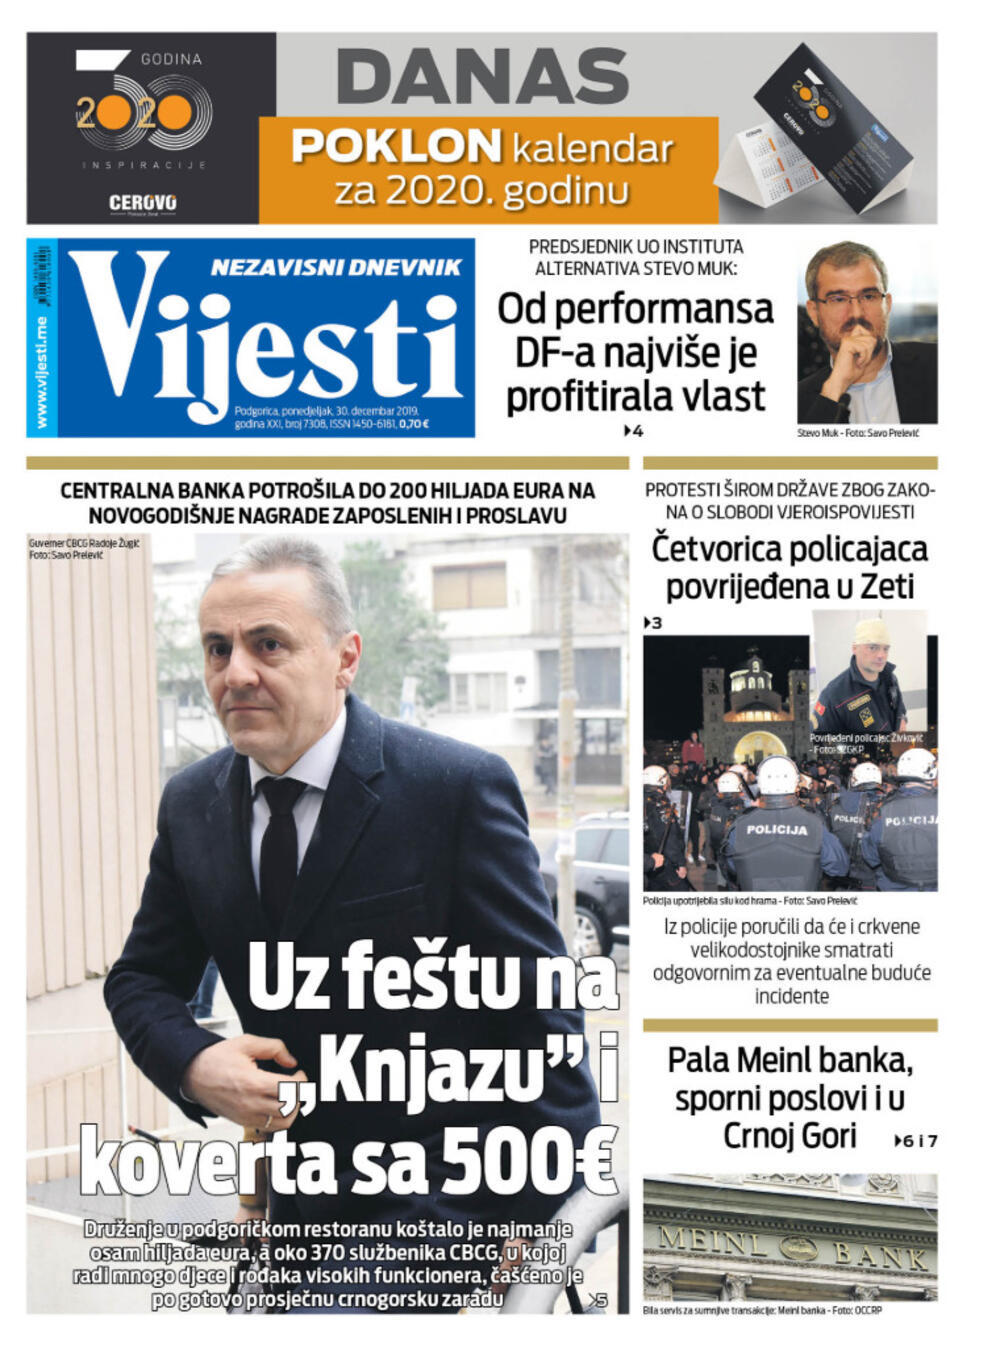 Naslovna strana "Vijesti" za 30. decembar